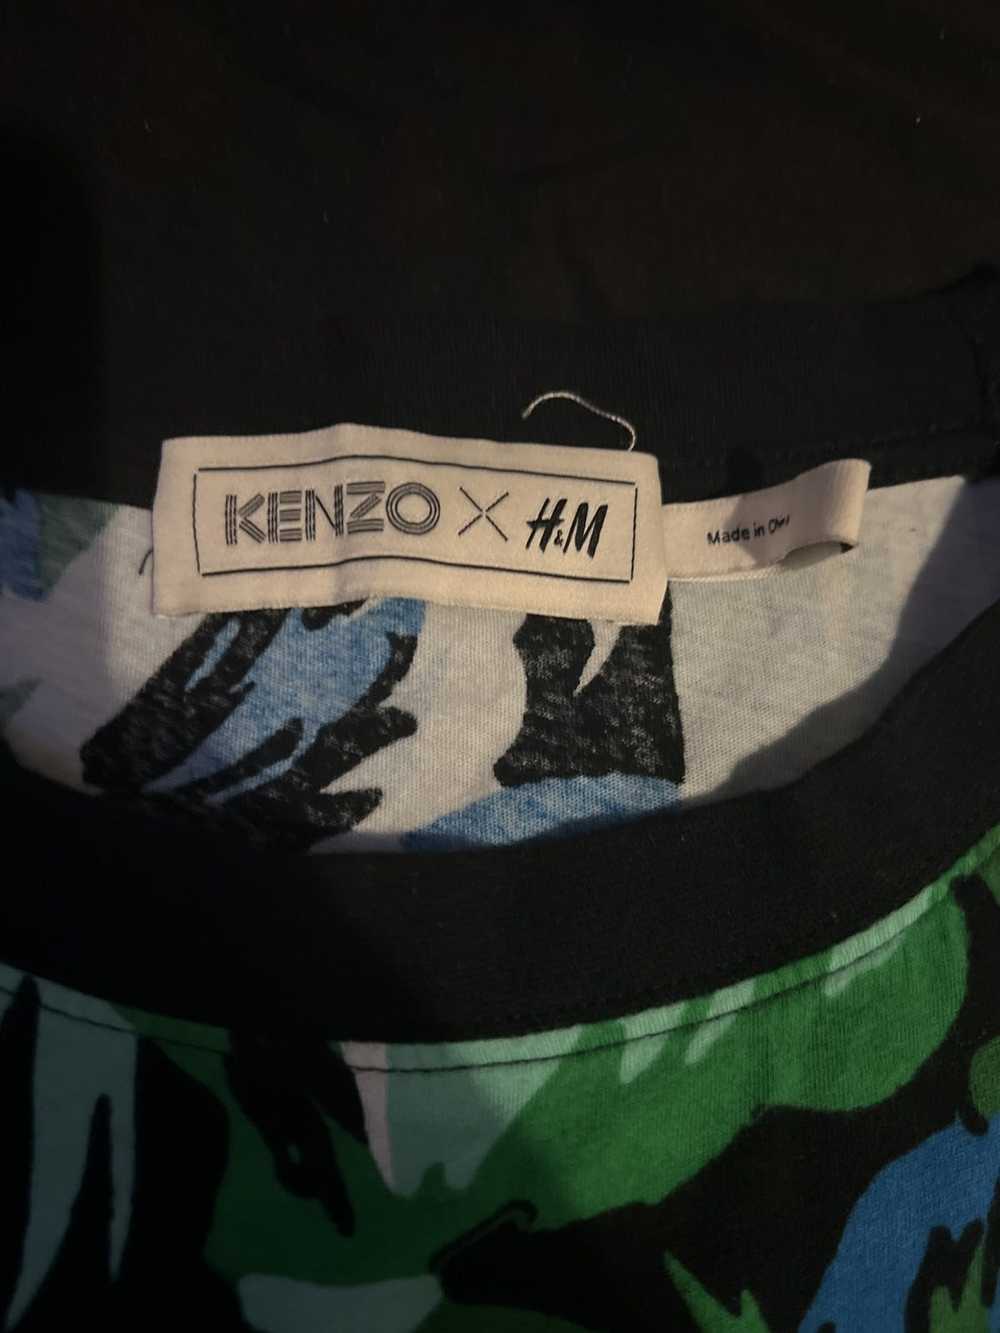 H&M × Kenzo Kenzo x h&m - image 2